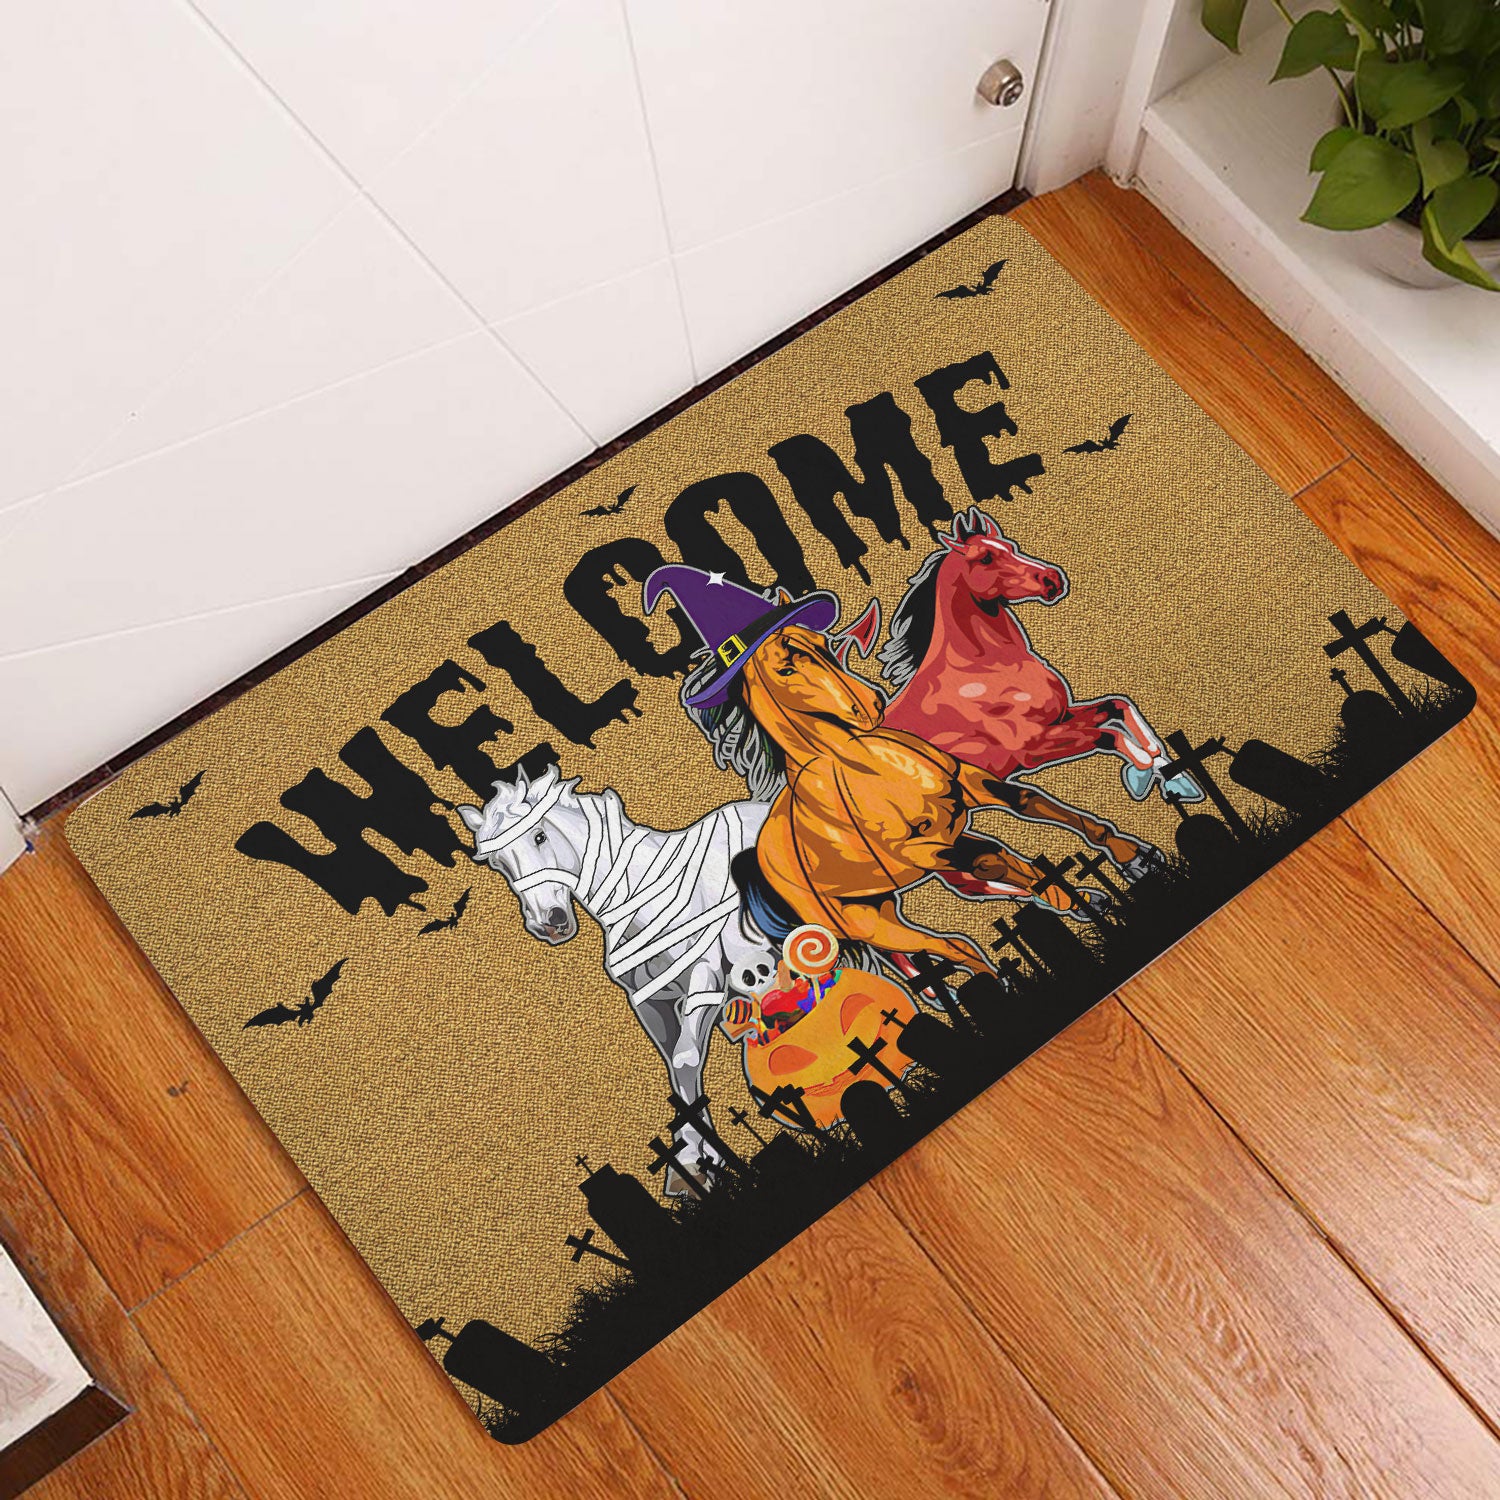 Ohaprints-Doormat-Outdoor-Indoor-Halloween-Welcome-Home-Horse-Happy-Halloween-Horses-Lover-Rubber-Door-Mat-1957-